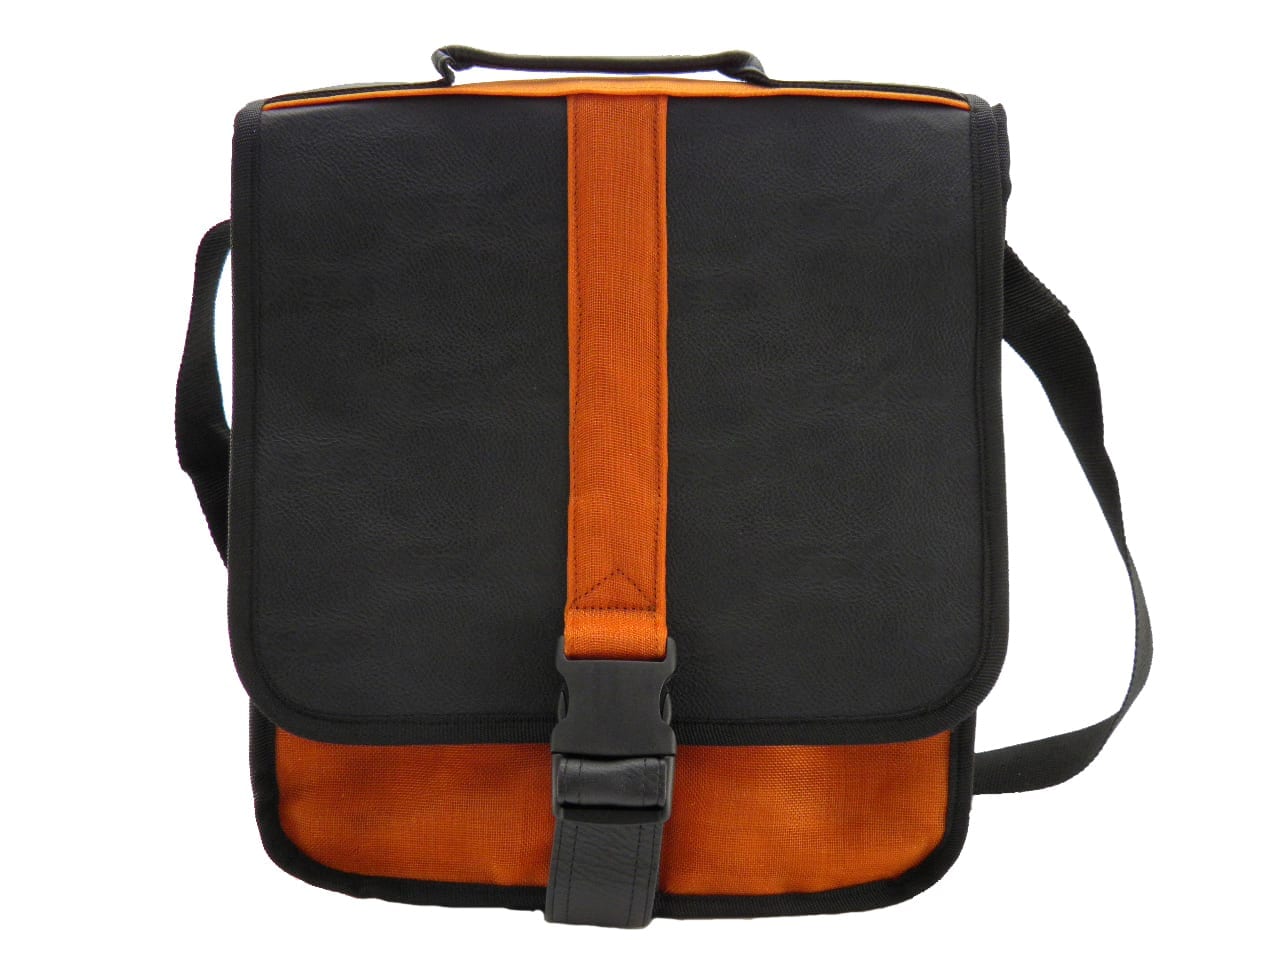 Best Hand - Eco-friendly Tablet Bag - Orange